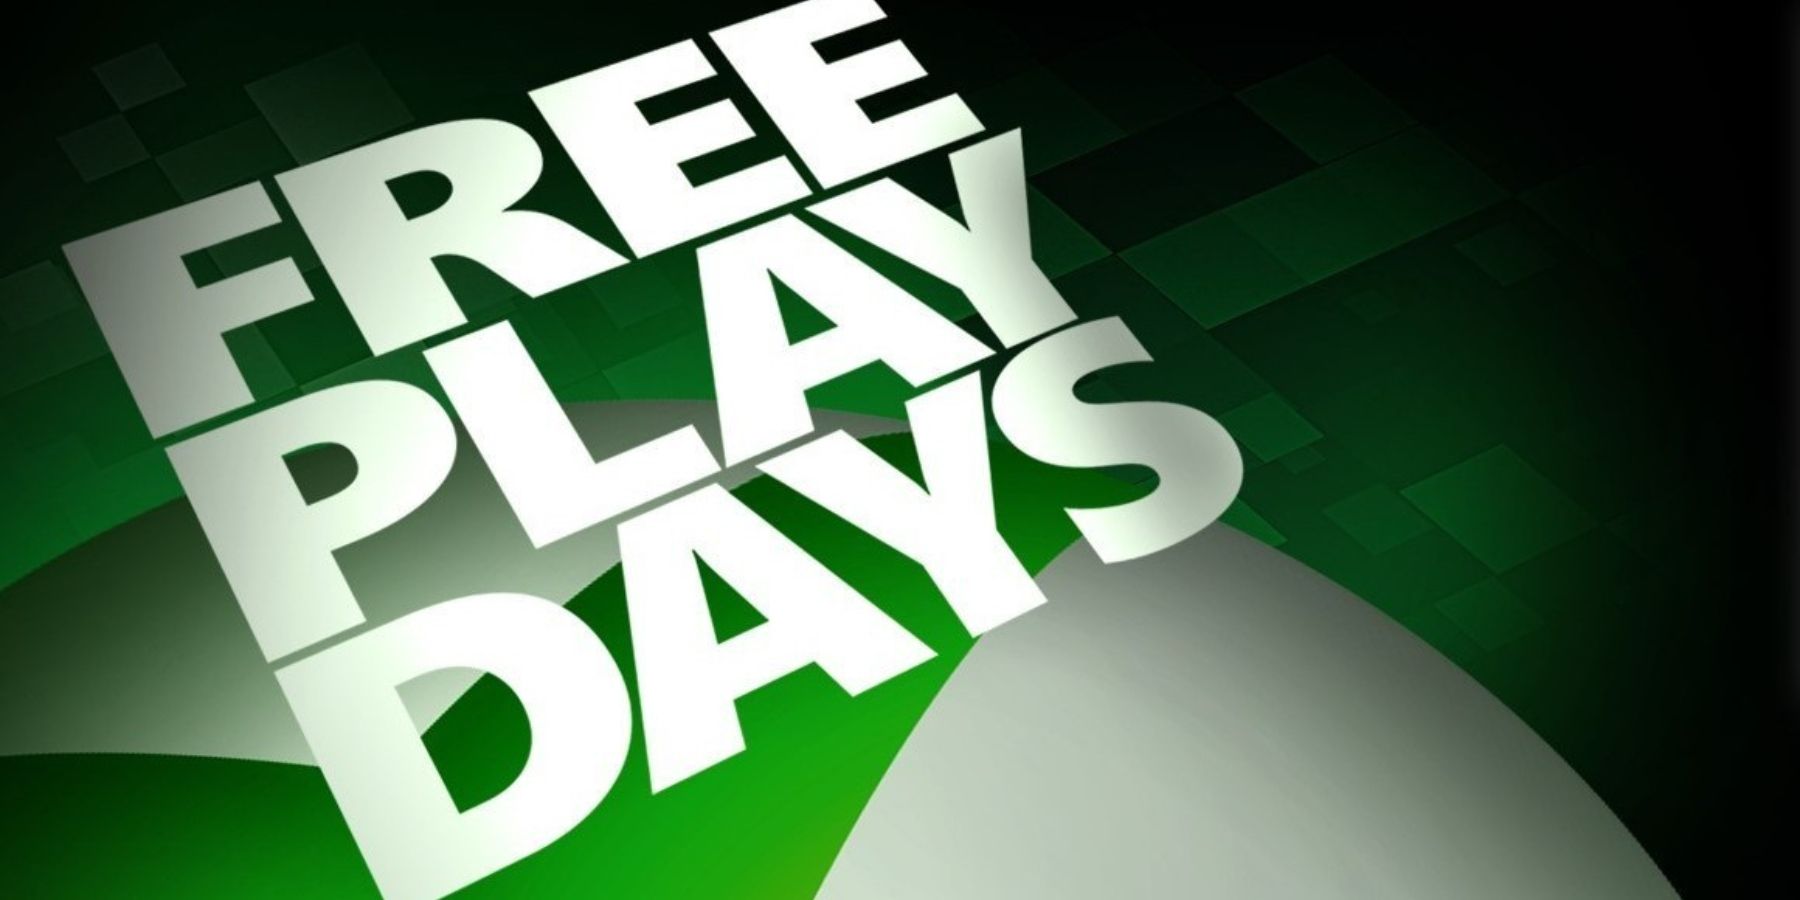 xbox free play days